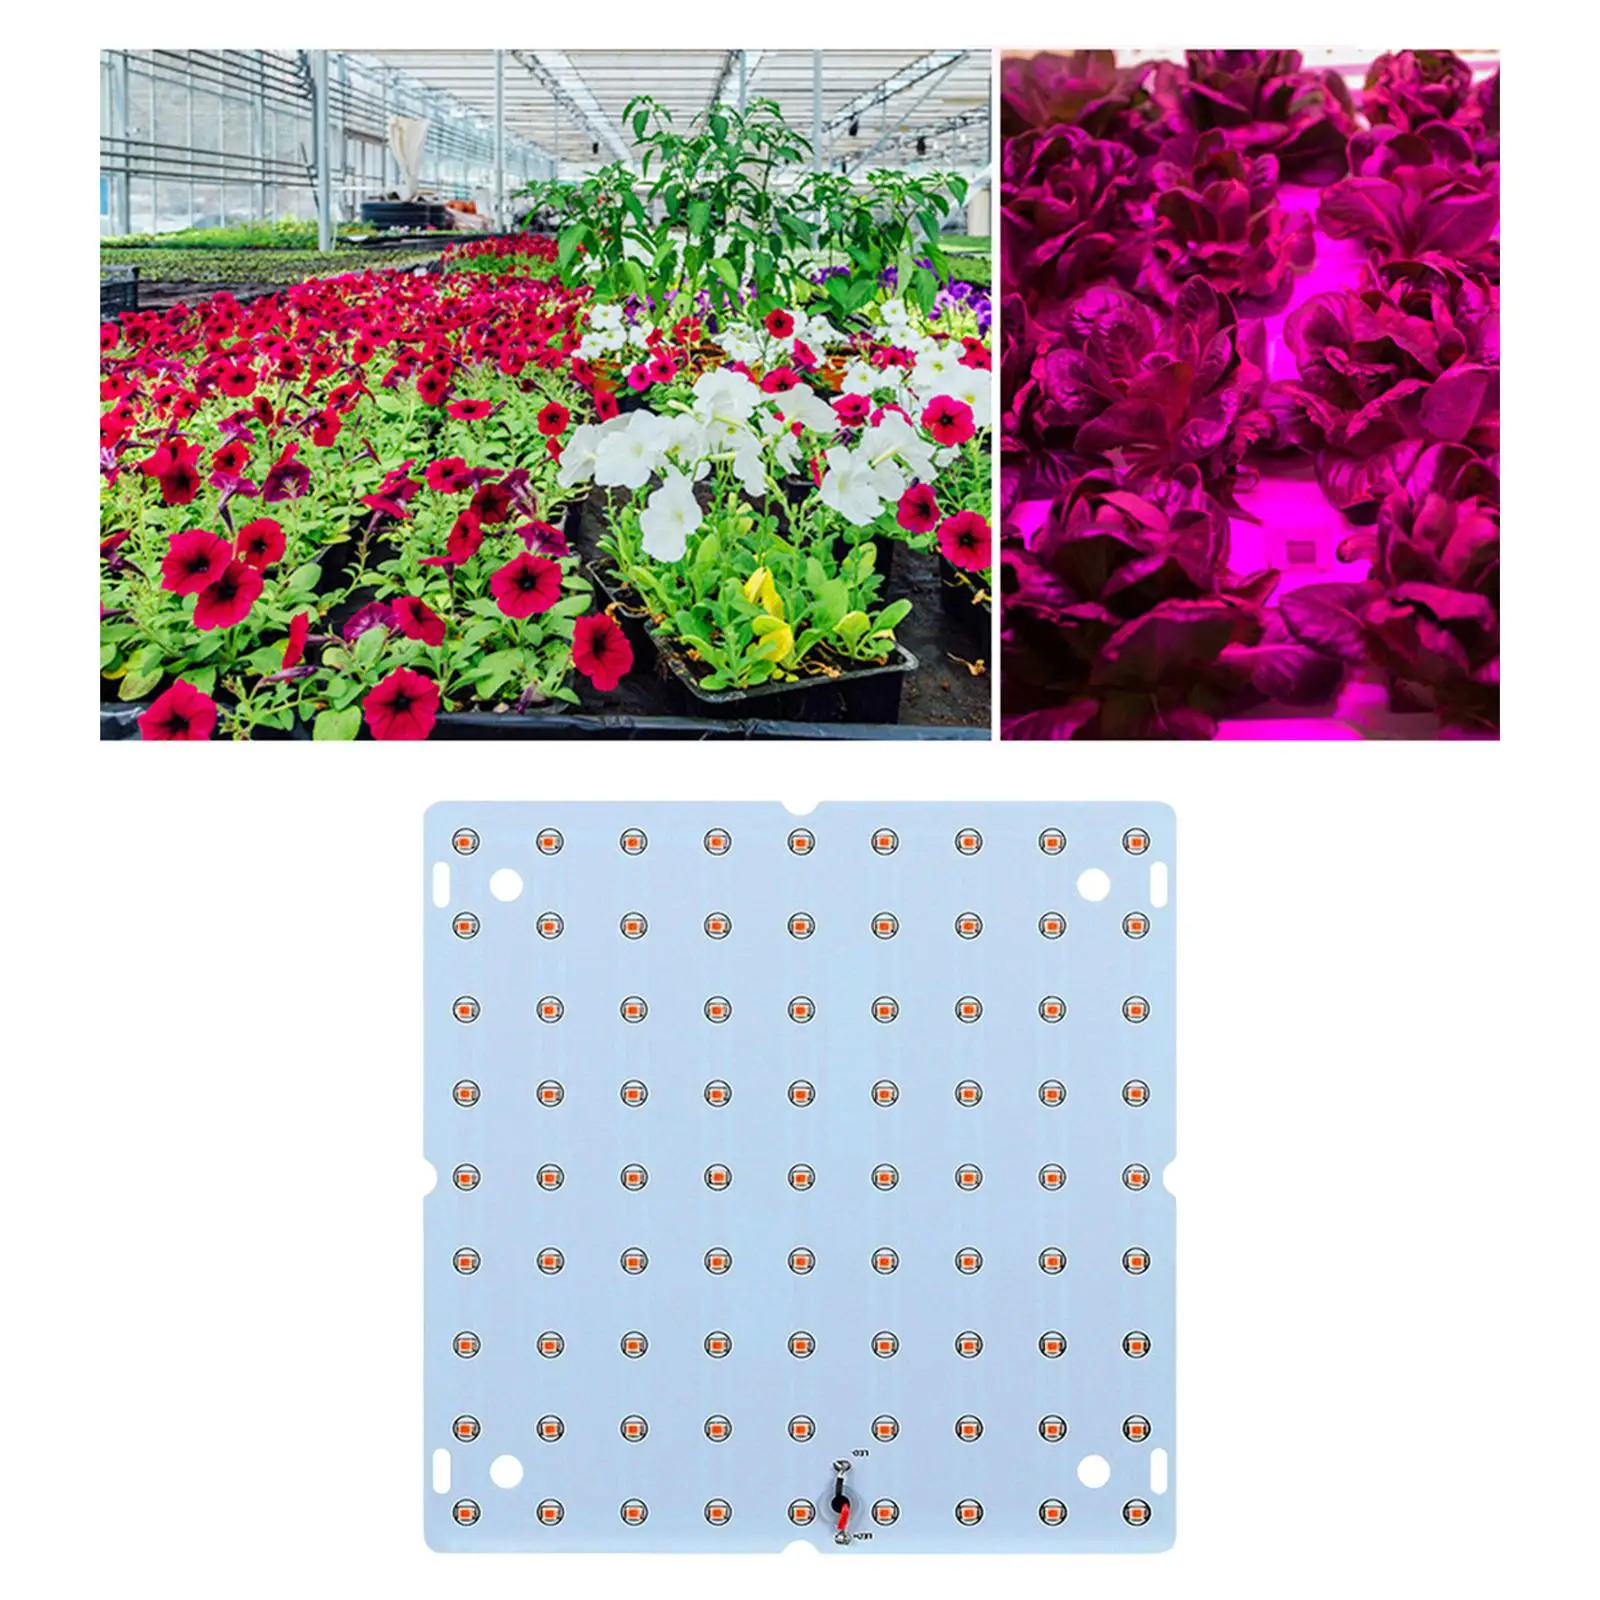 85-265V LED Grow Light Panel Full Grow Light for Vegetable Bloom Hydroponics Flower Seed Starting Greenhouse